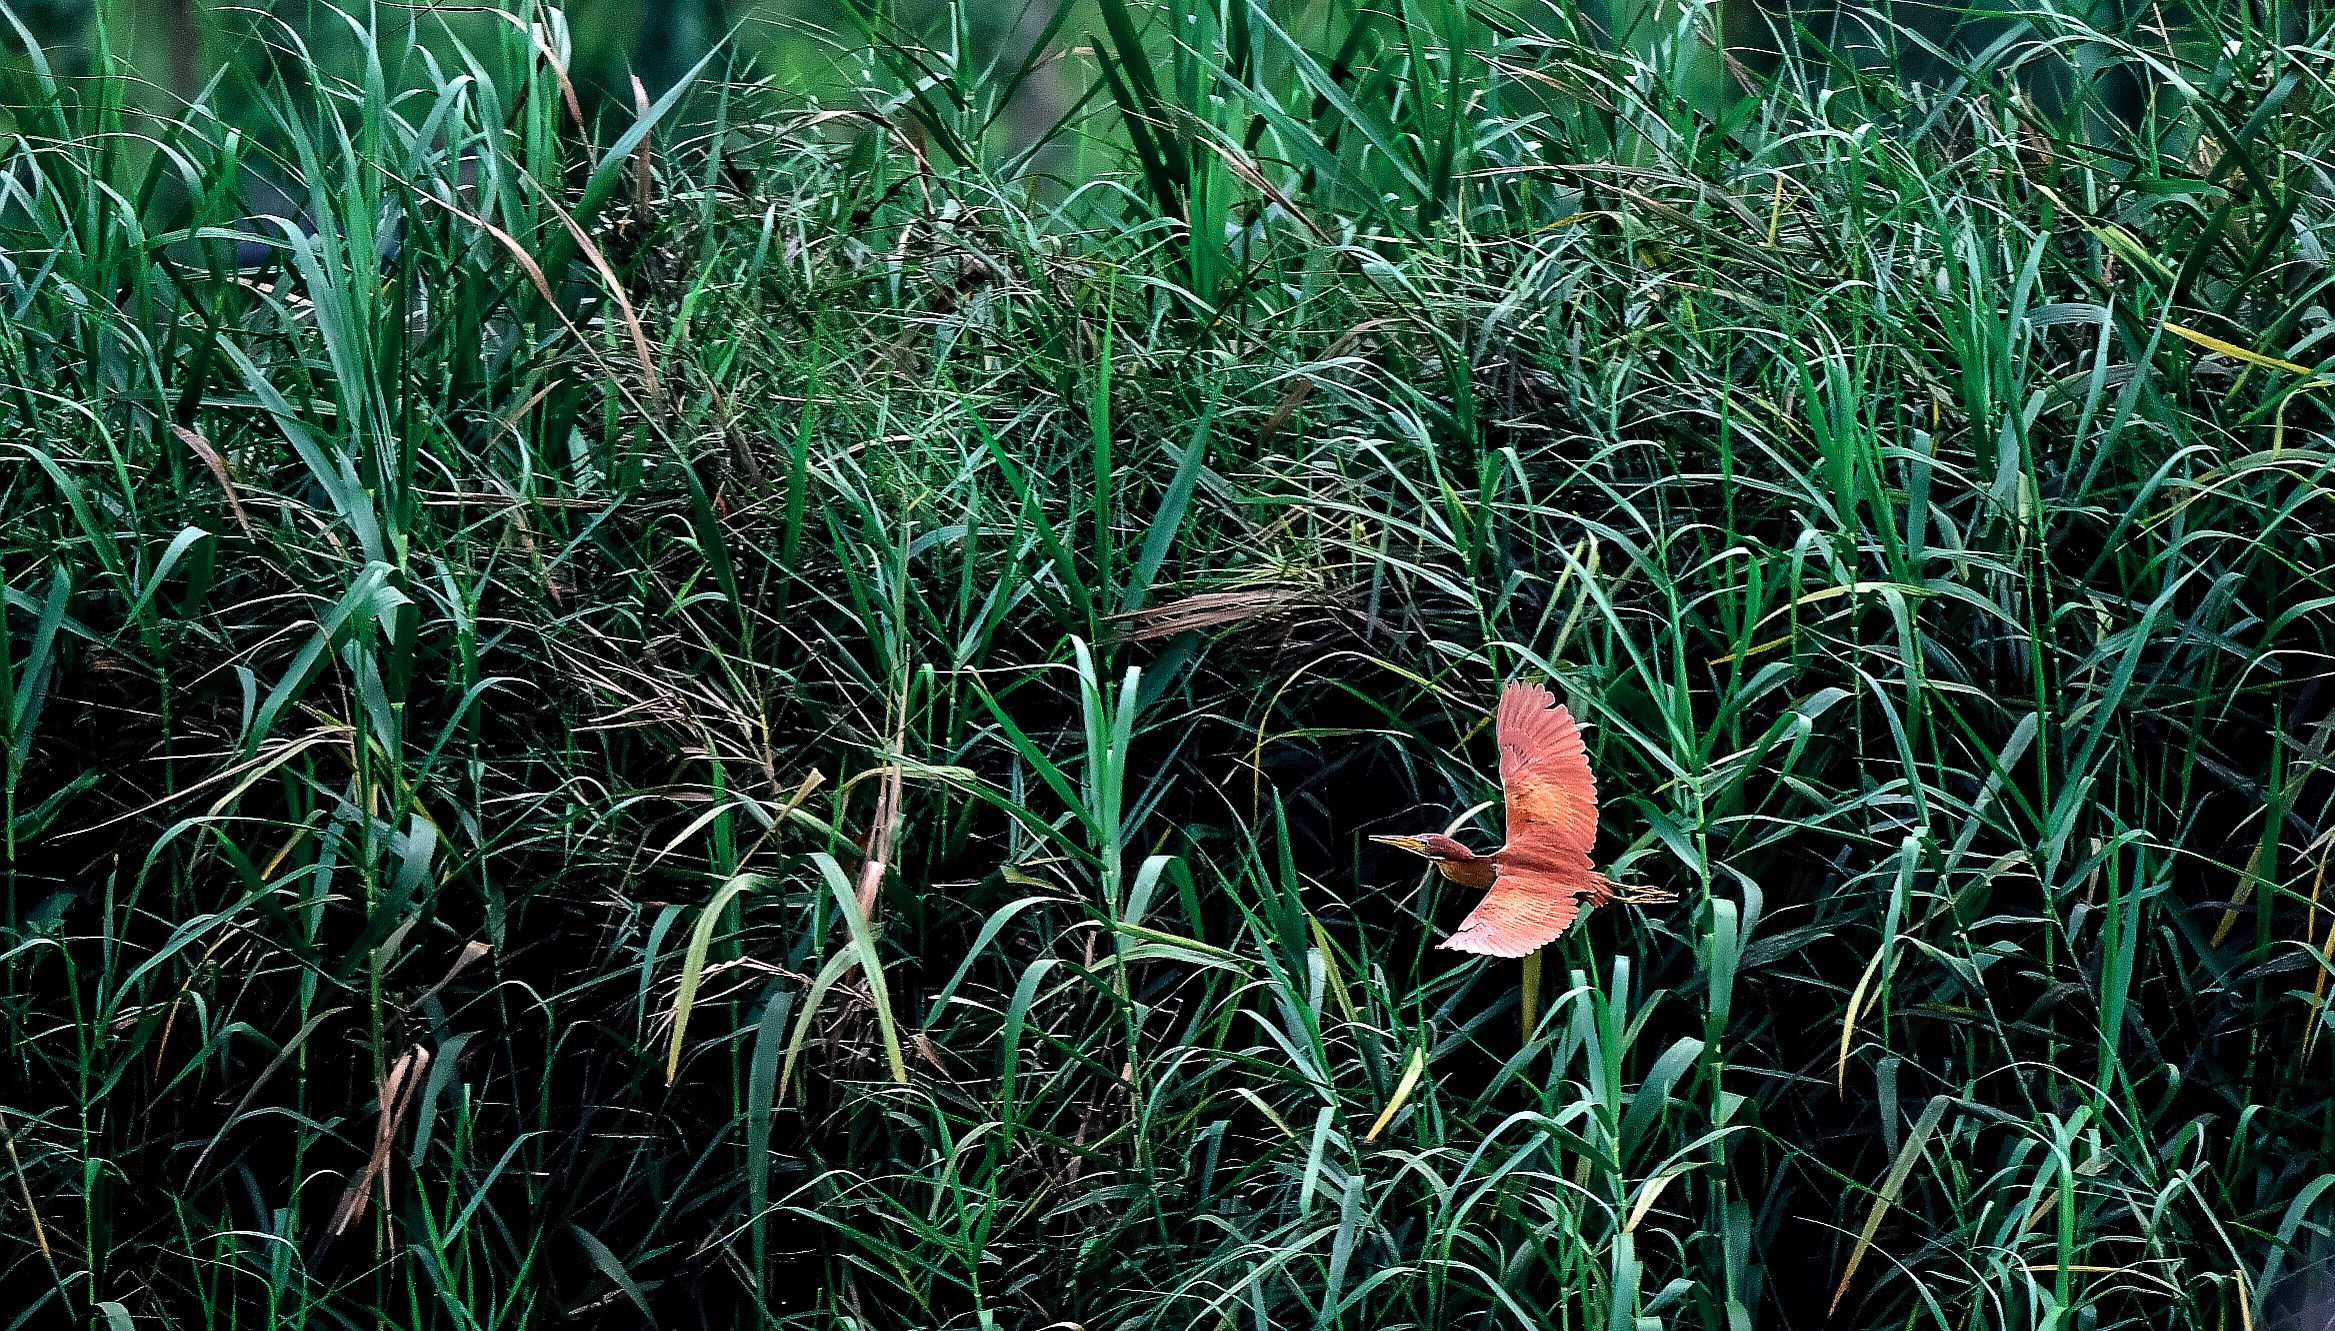 一只深紅色的栗葦鶼正在岸邊水草中飛速掠過。